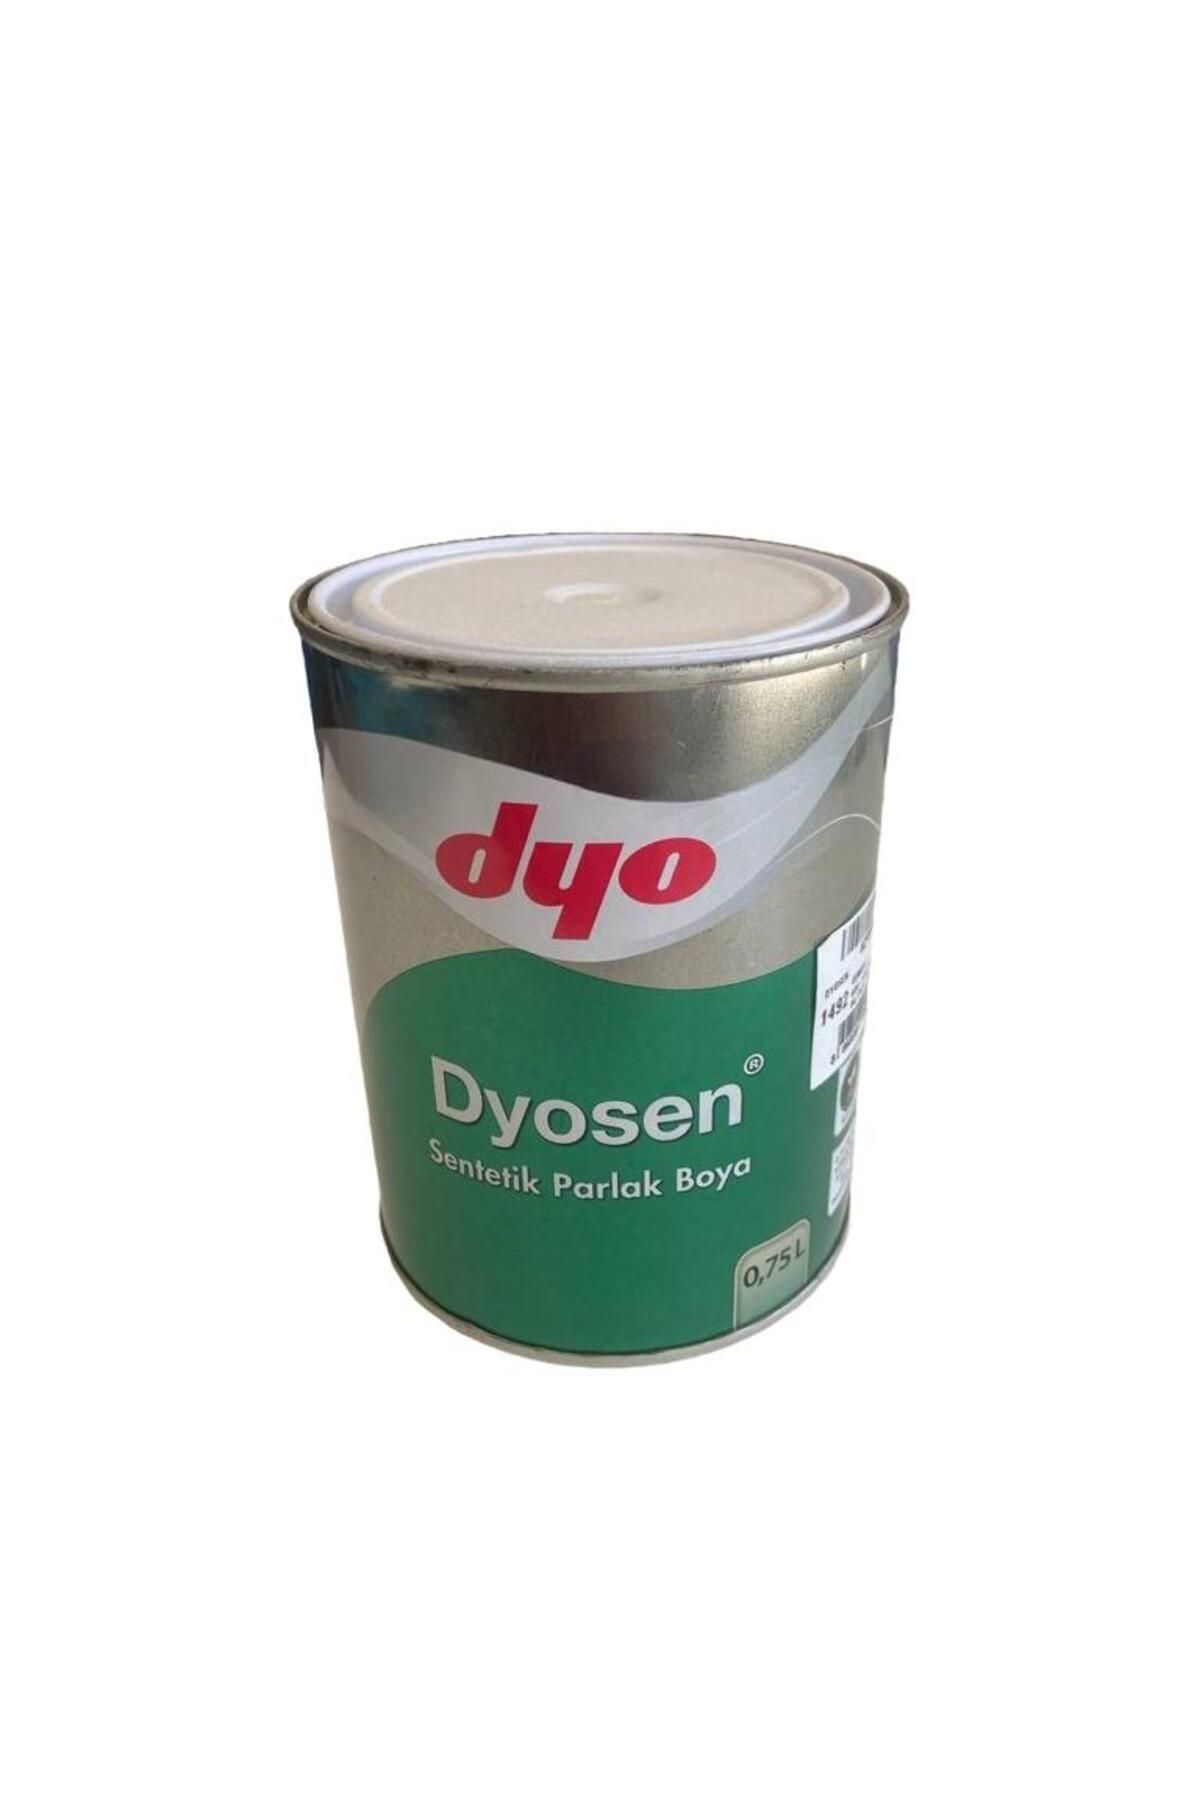 Dyo dyosen sentetik boya (açık krem) 0.75